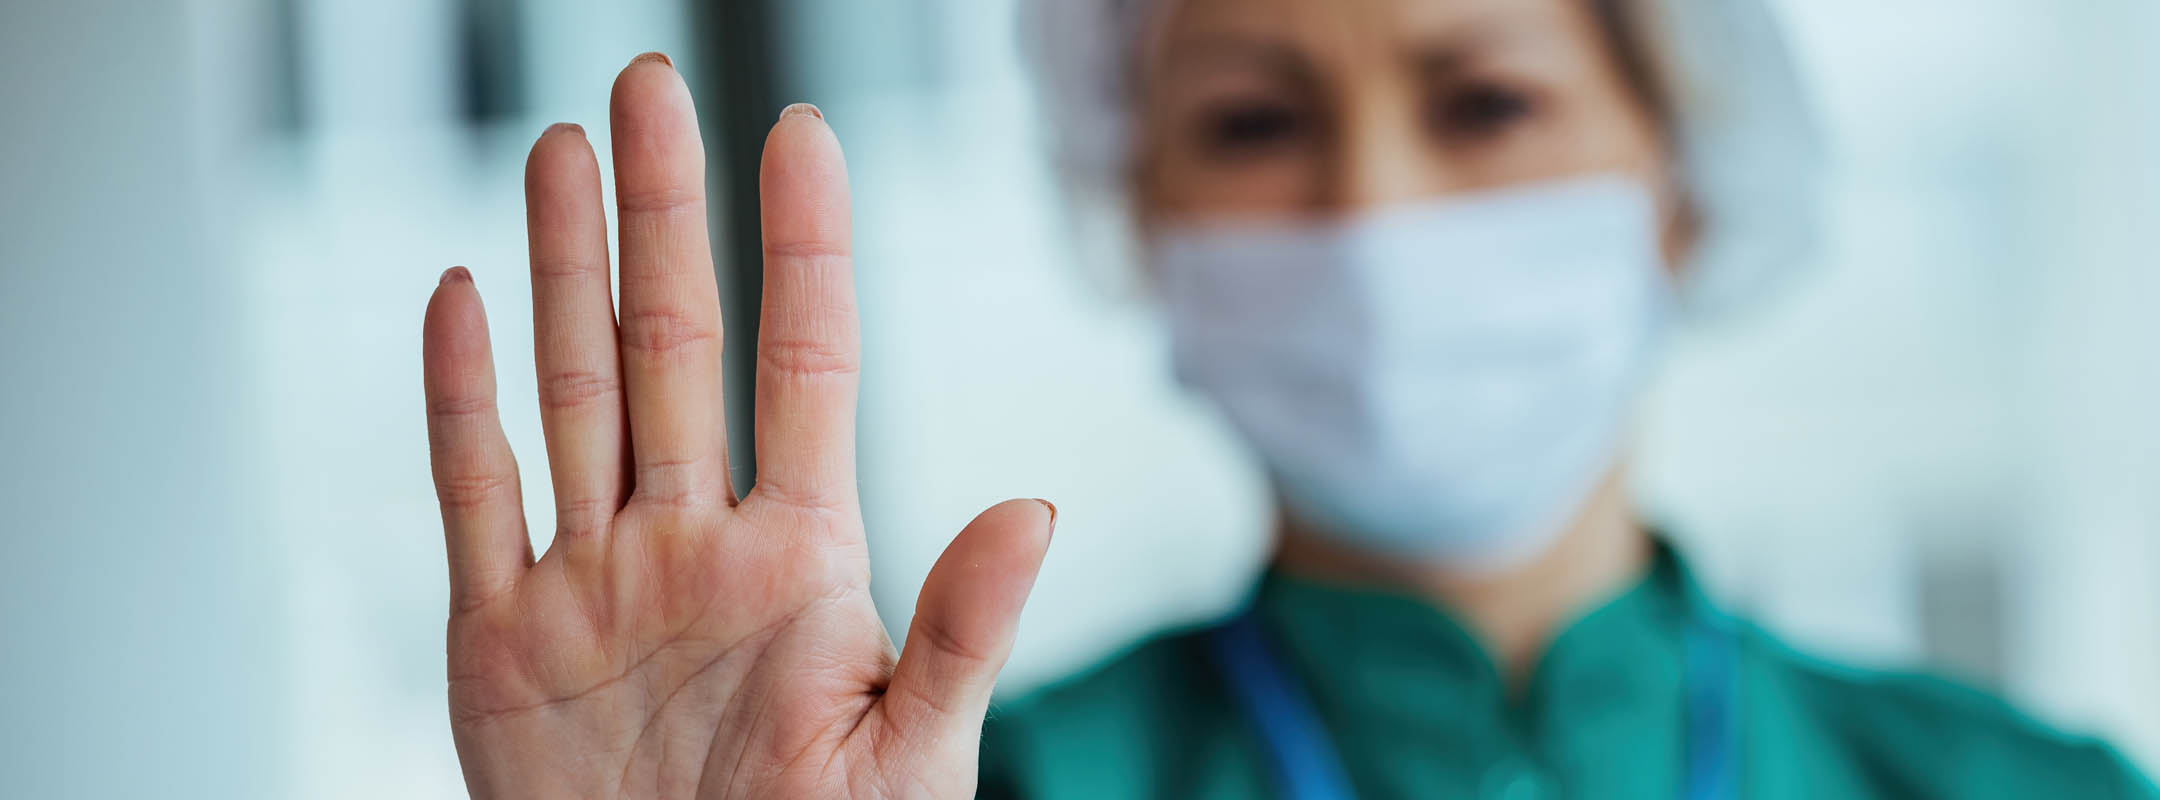 Eine Krankenschwester hebt ihre Hand ablehnend nach oben.